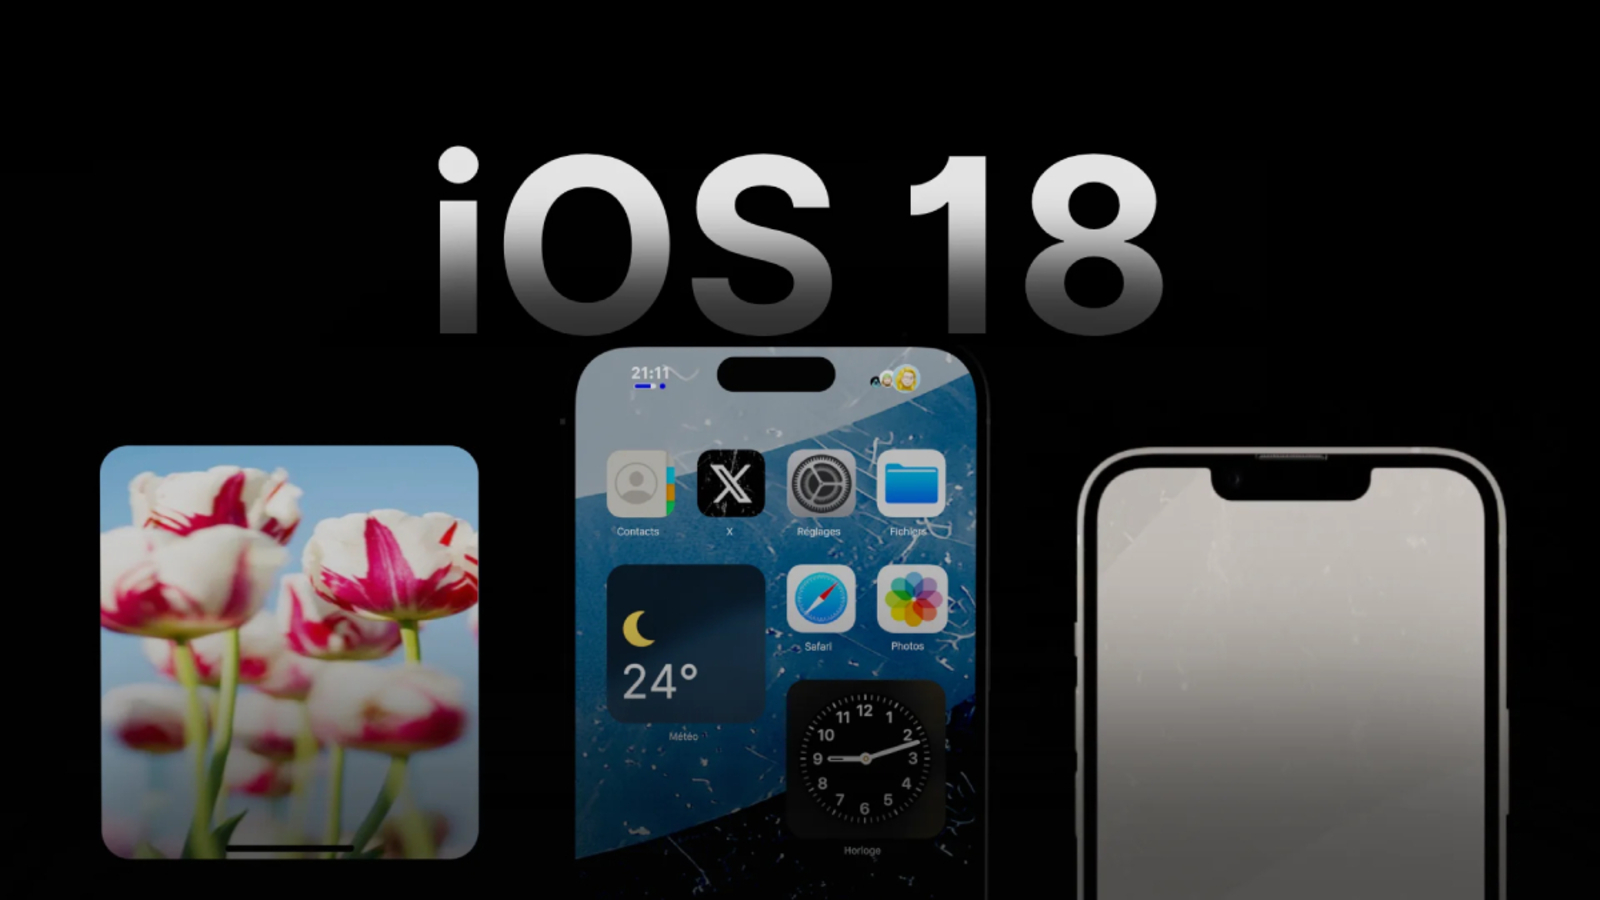 iOS 18 ile Beklenen Değişiklikler ve Yenilikler